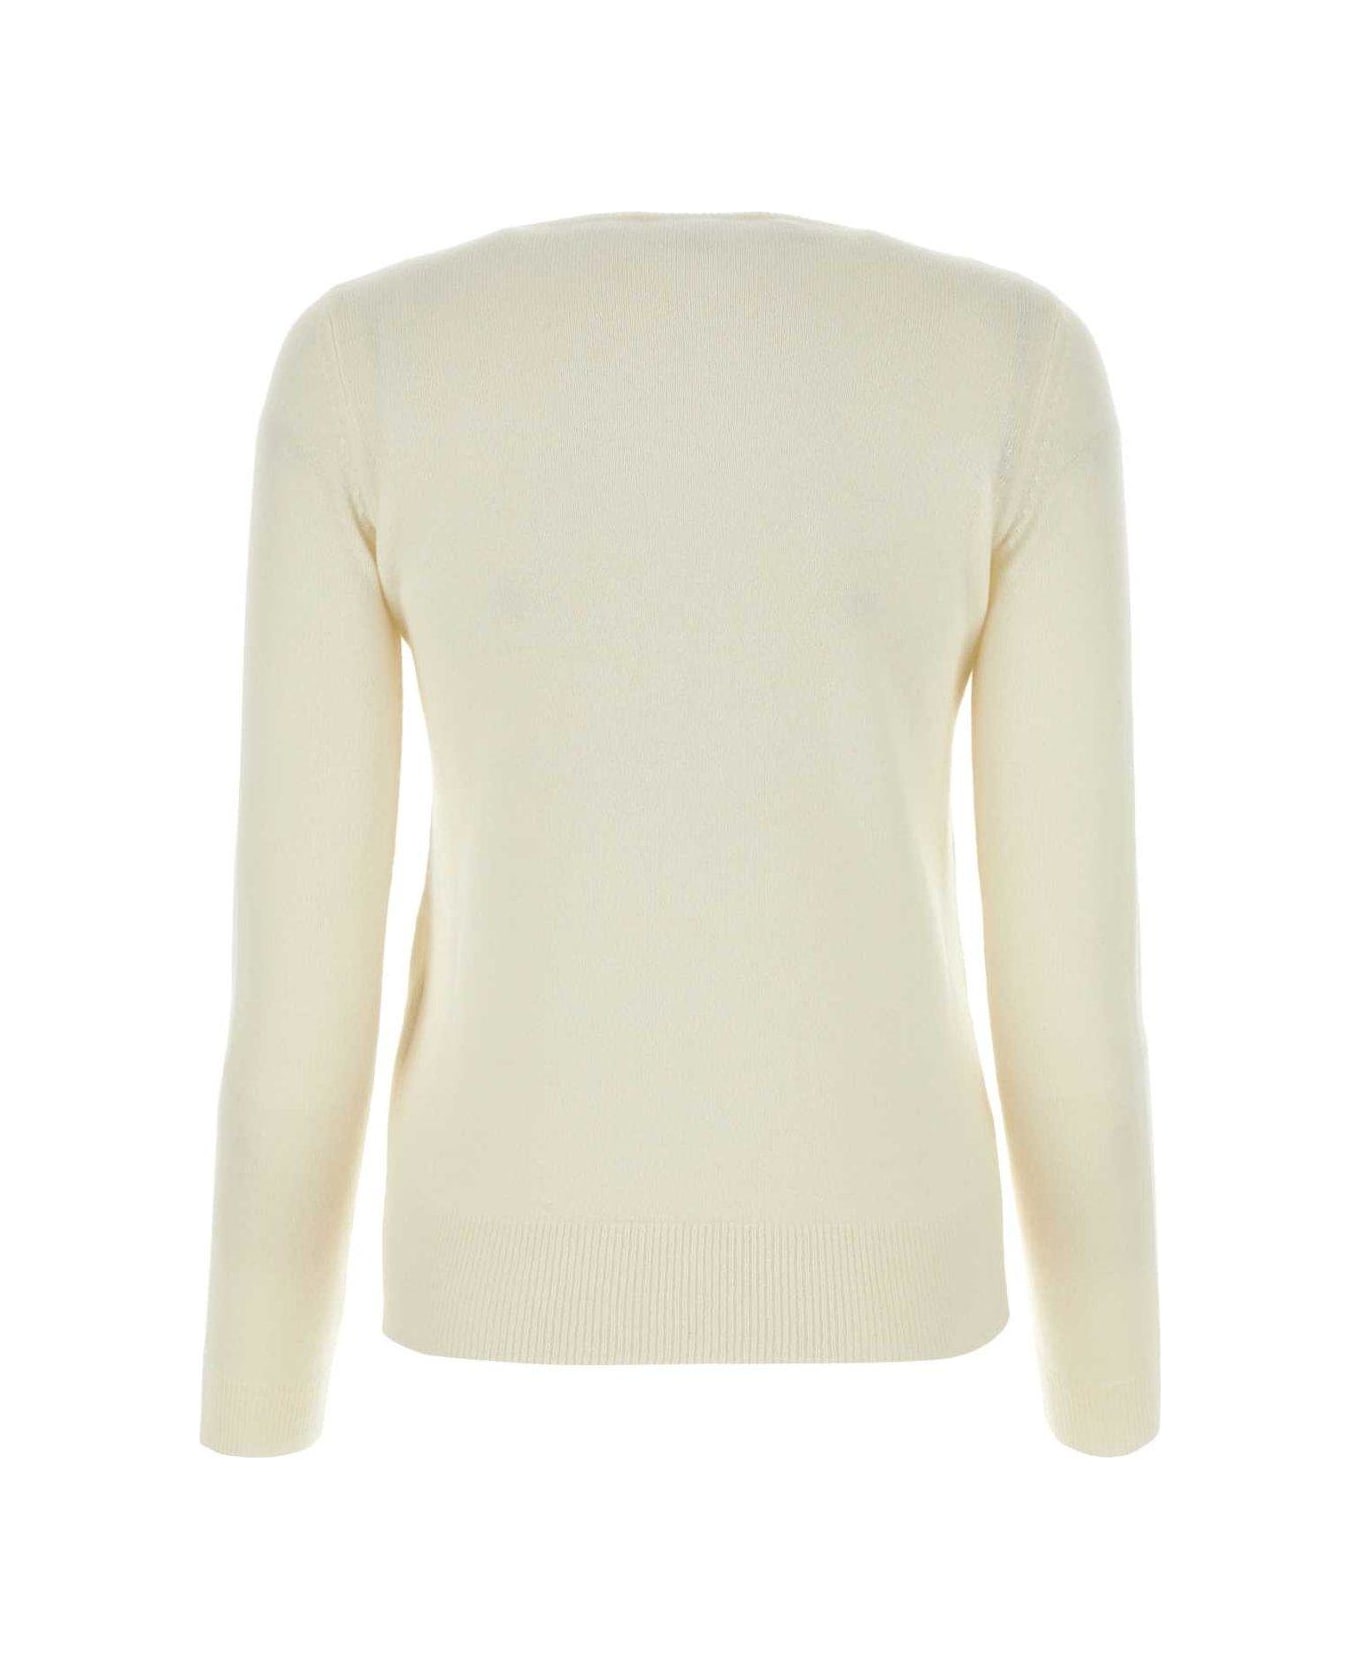 Max Mara Bari Wool And Cashmere Sweater - WHITE ニットウェア